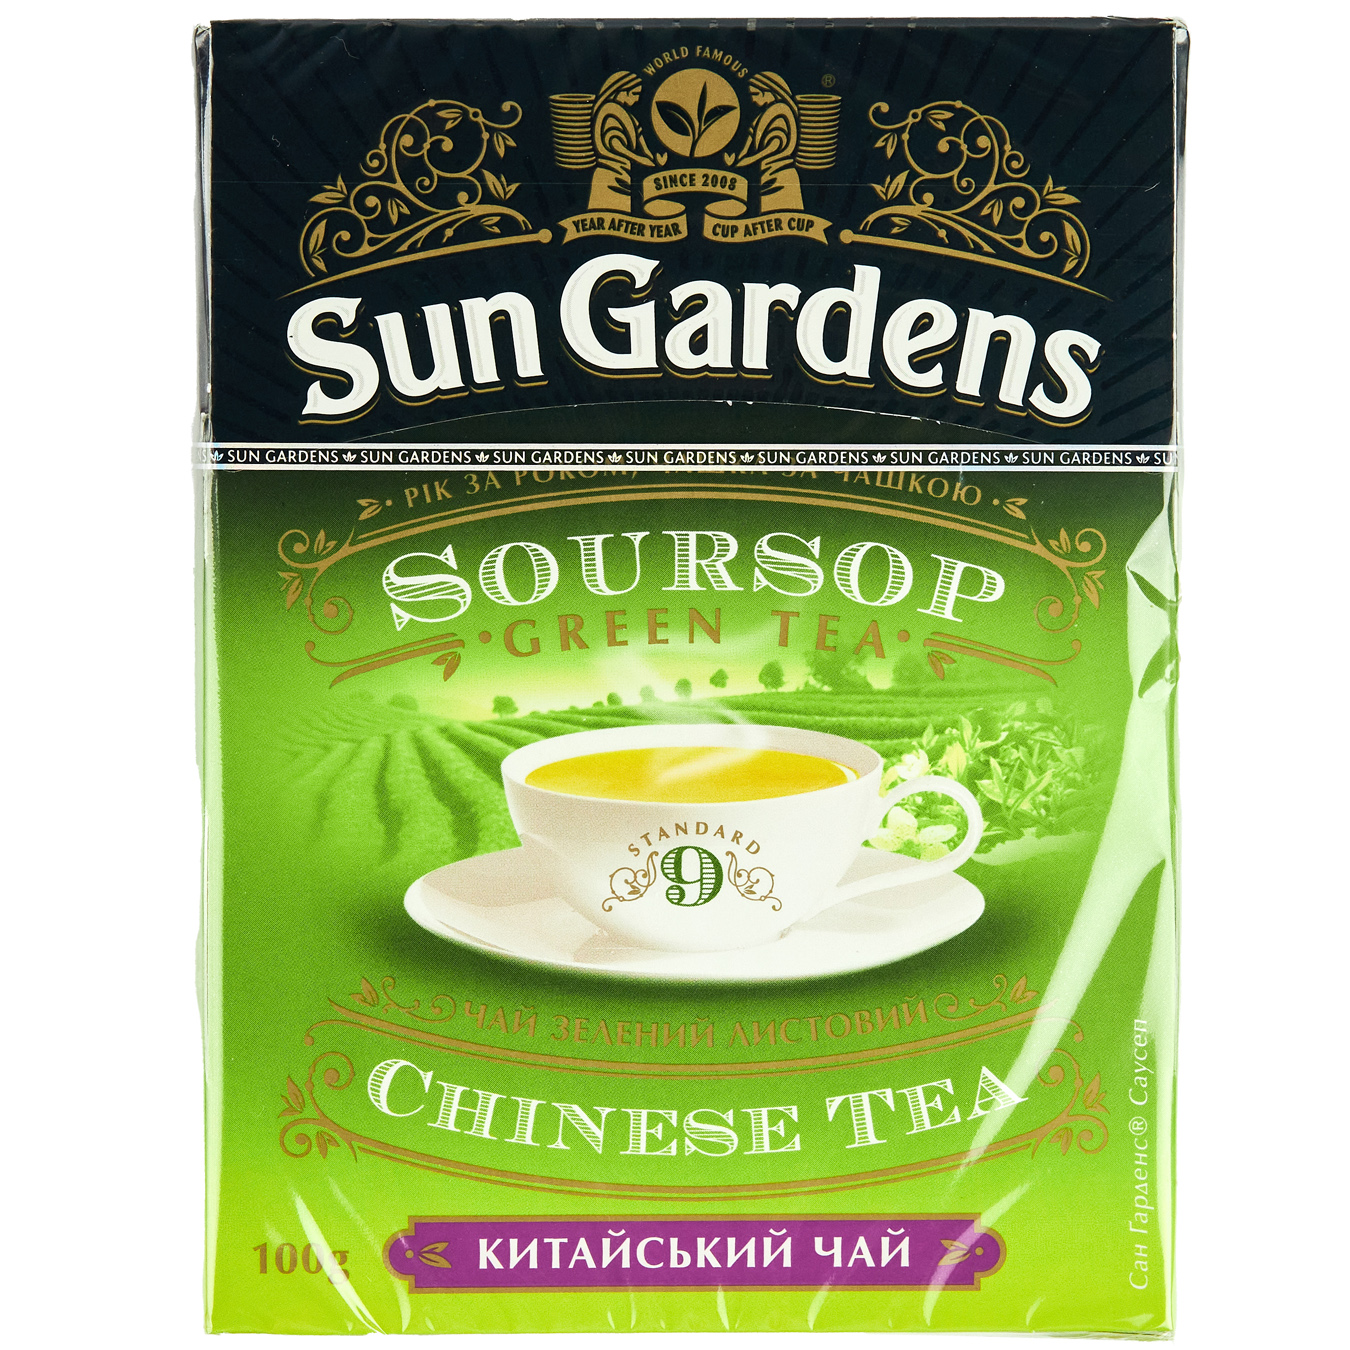 Green tea Sour Sop Sun Gardens 100g